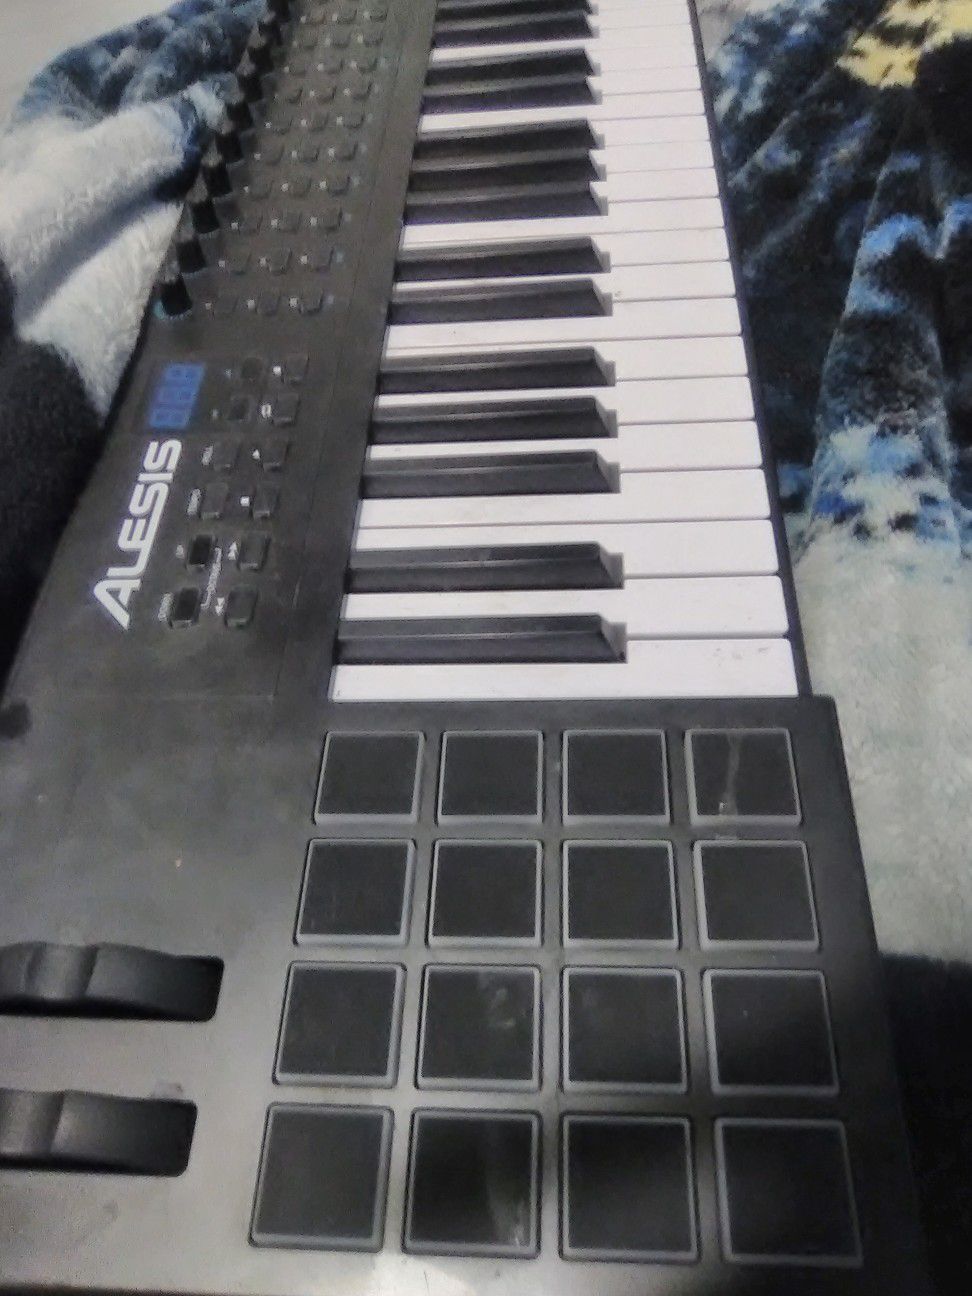 Alesis VI 49 keyboard